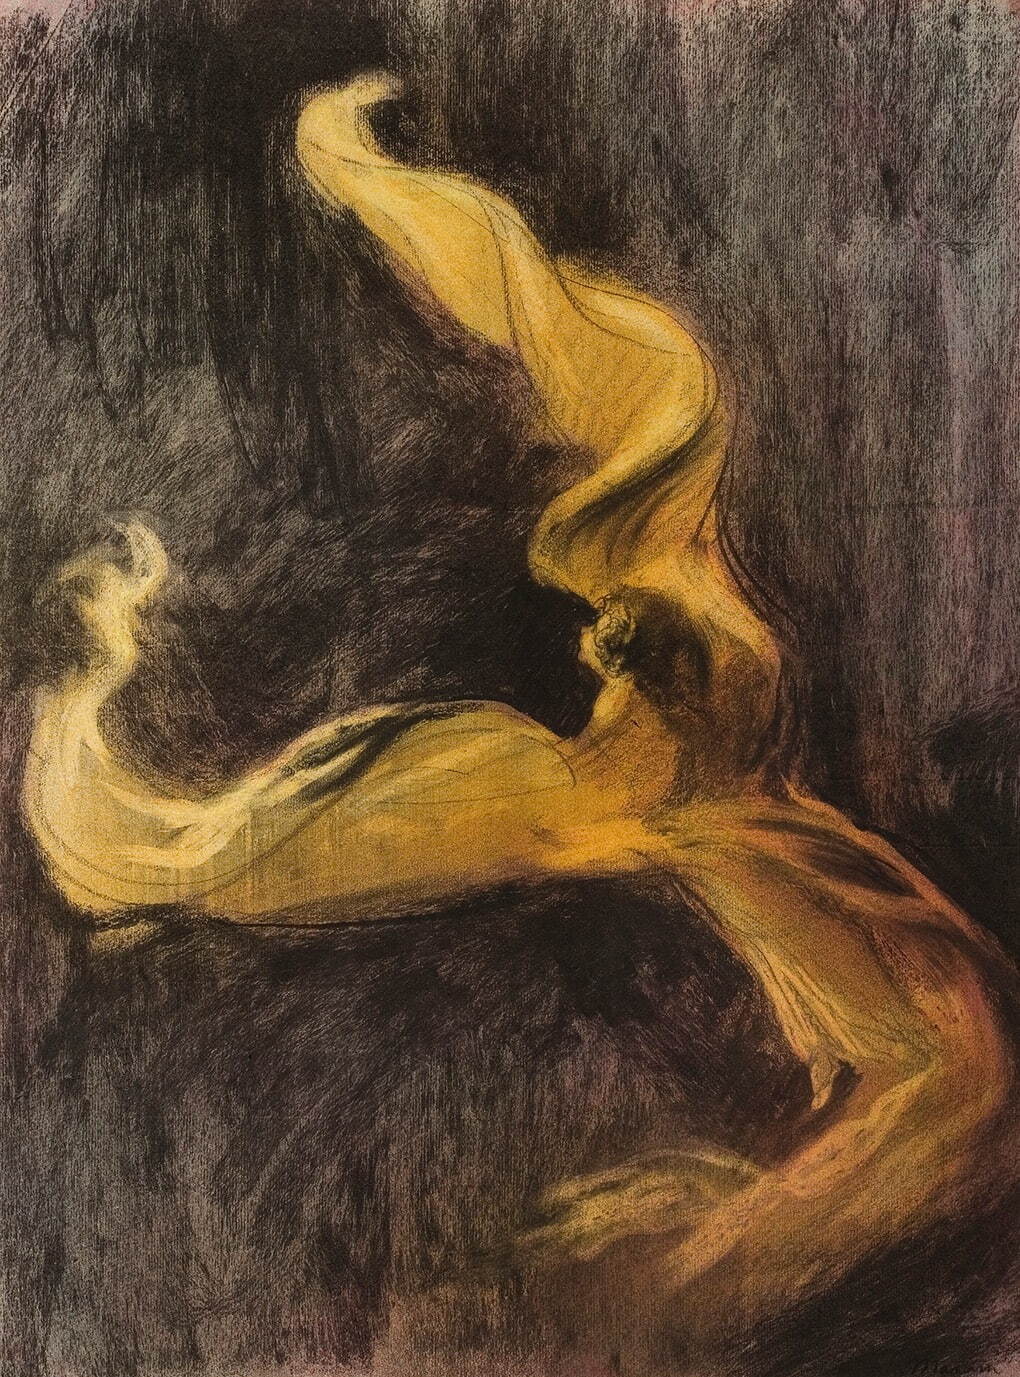 シャルル・モラン 《ロイ・フラー(黄色の衣装)》 1895年頃
デイヴィッド・E.ワイズマン＆ジャクリーヌ・E.マイケル蔵
© Stéphane Pons